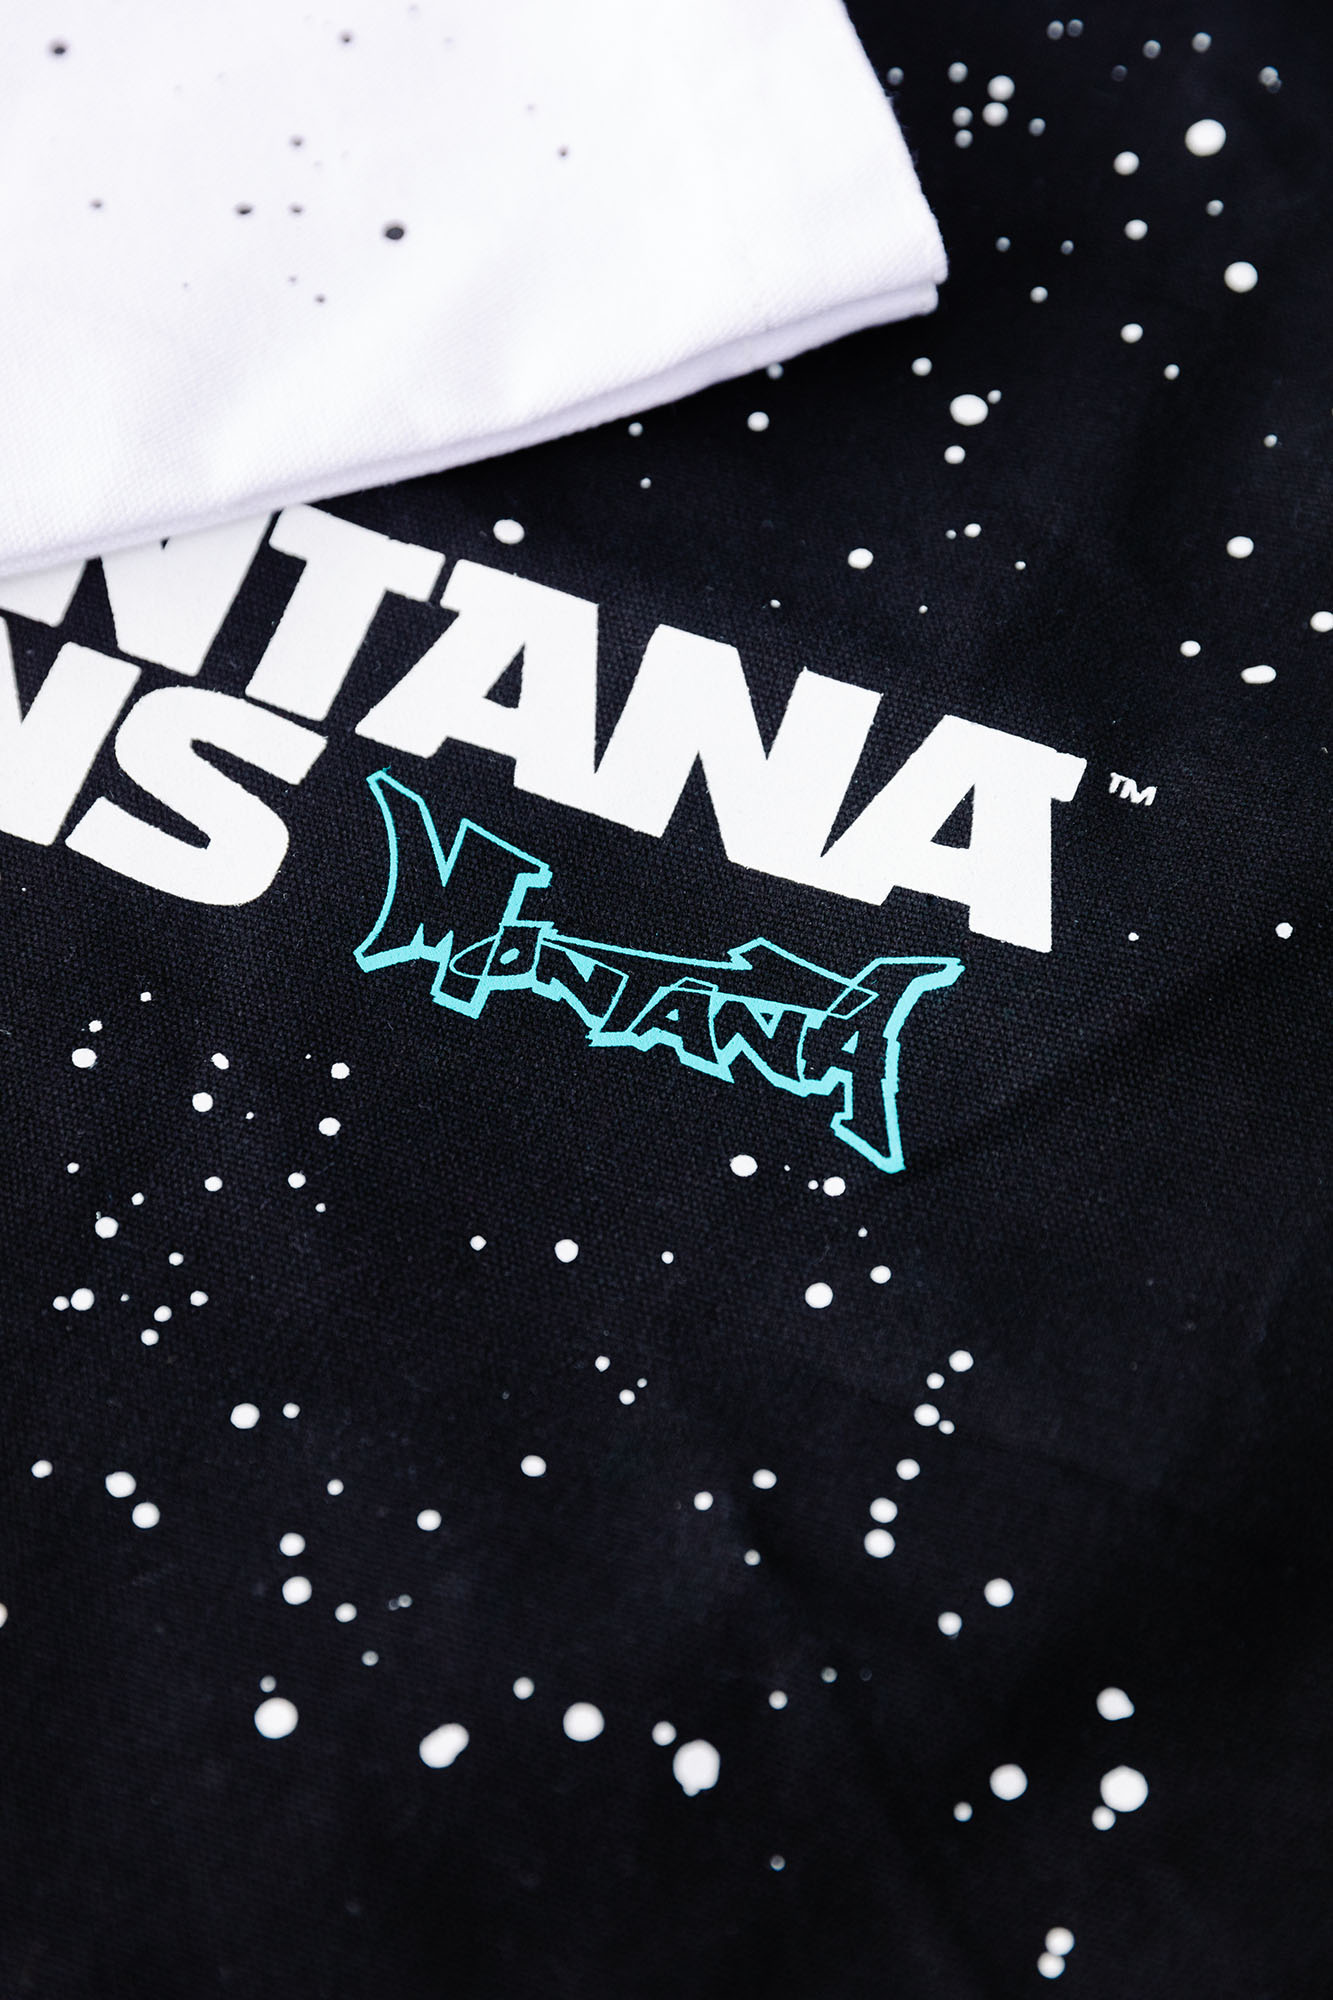 Montana Typo-Logo+Stars Cotton Bag - Black